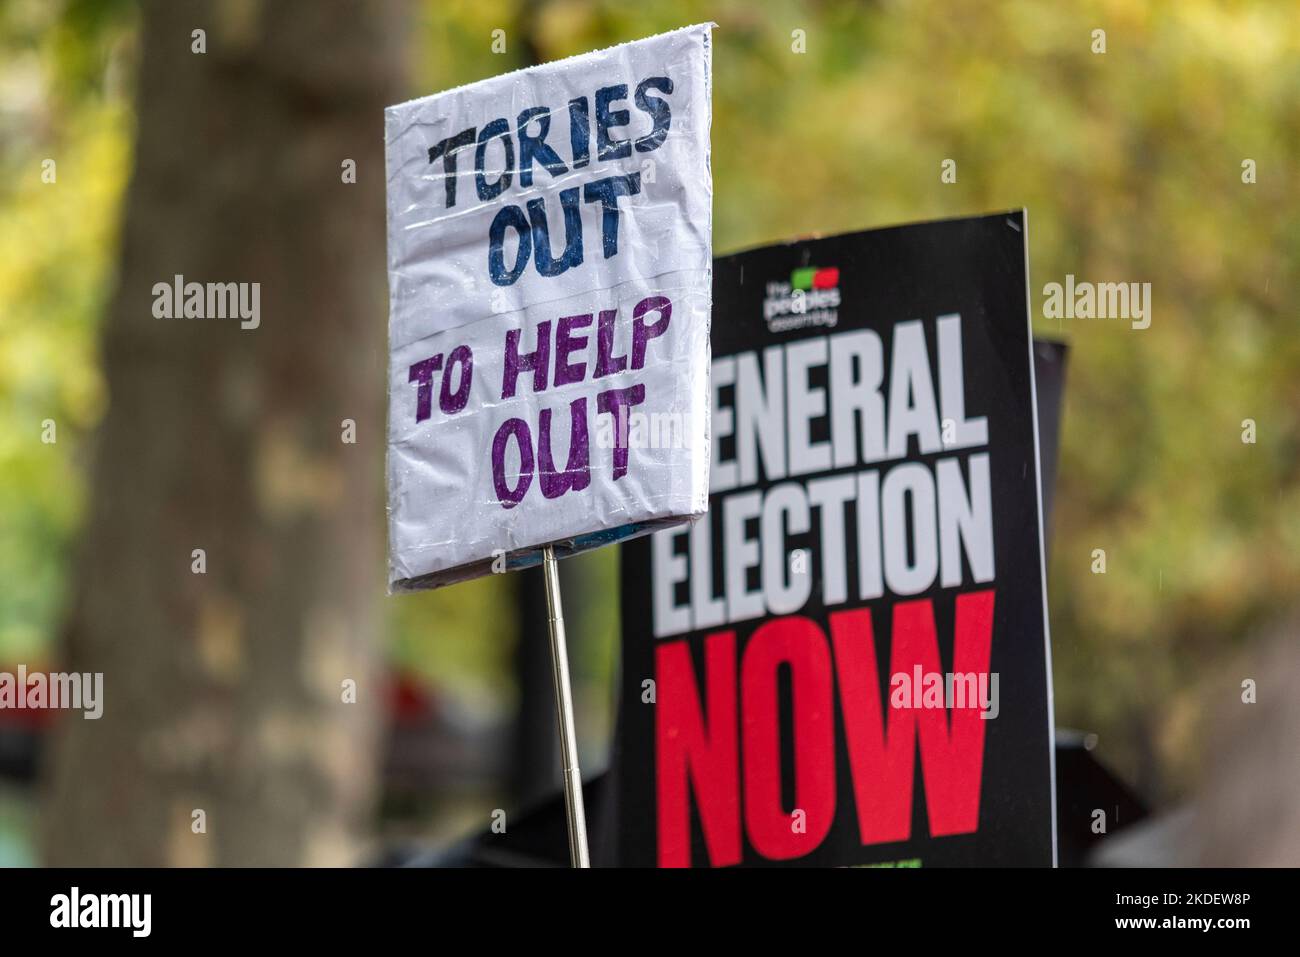 Humorvolles Plakat bei einem Protest in London gegen die Sparmaßnahmen der konservativen Regierung, der zu Parlamentswahlen und höheren Löhnen aufrief. Stockfoto